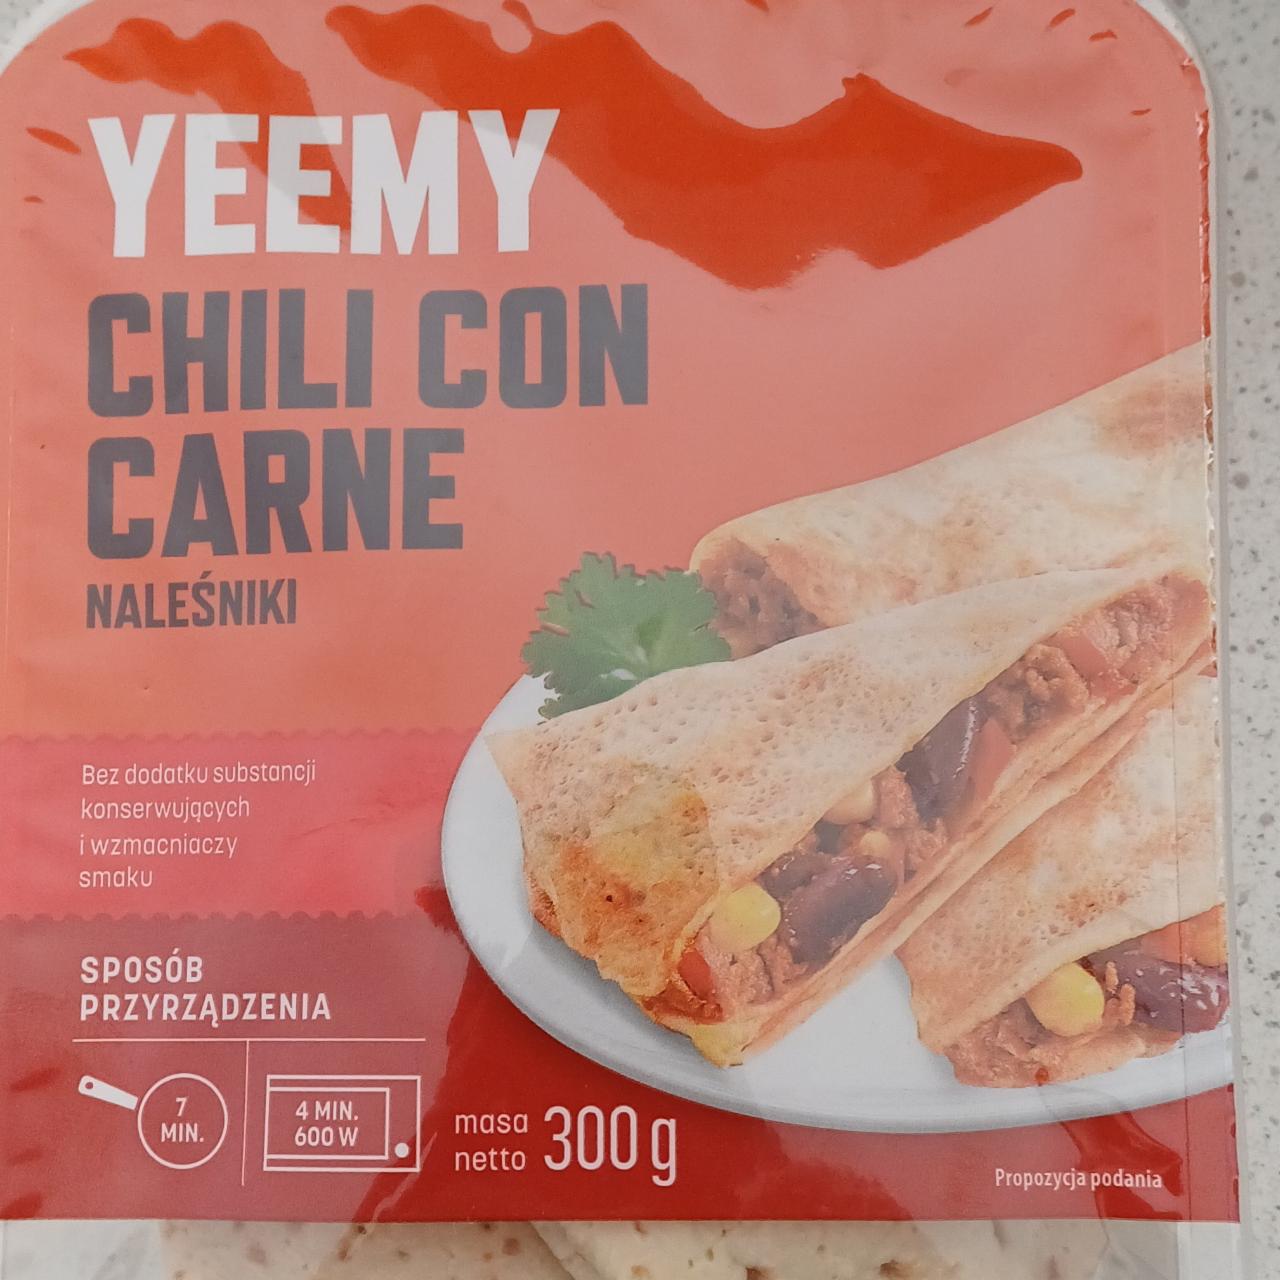 Fotografie - Chili con carne Naleśniki Yeemy